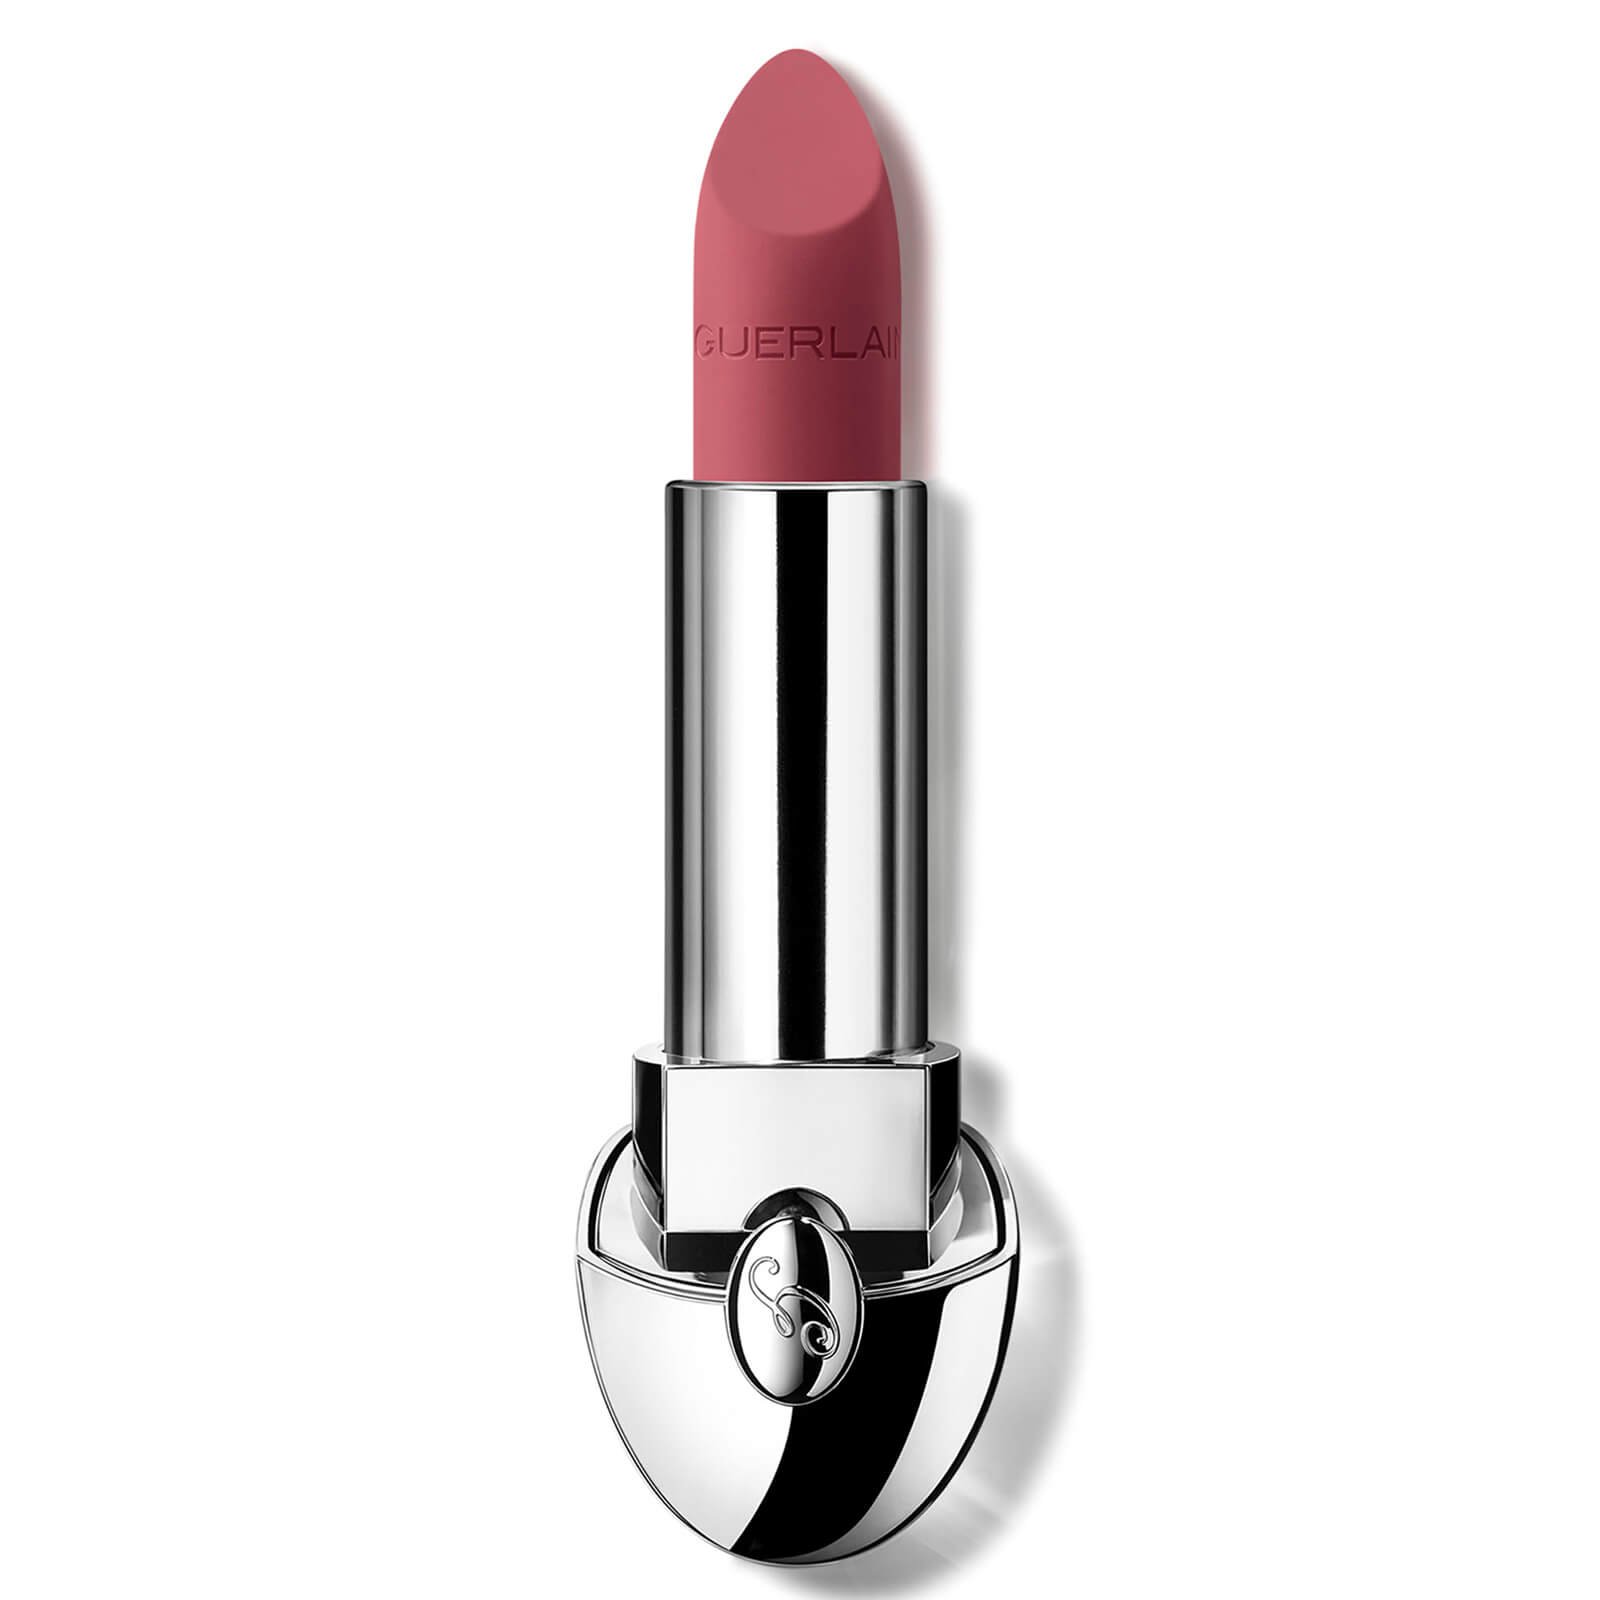 Guerlain Rouge G Luxurious Velvet 16 Hour Wear High-Pigmentation Velvet Matte Lipstick 3.5g (Various Shades) - 530 Blush Beige